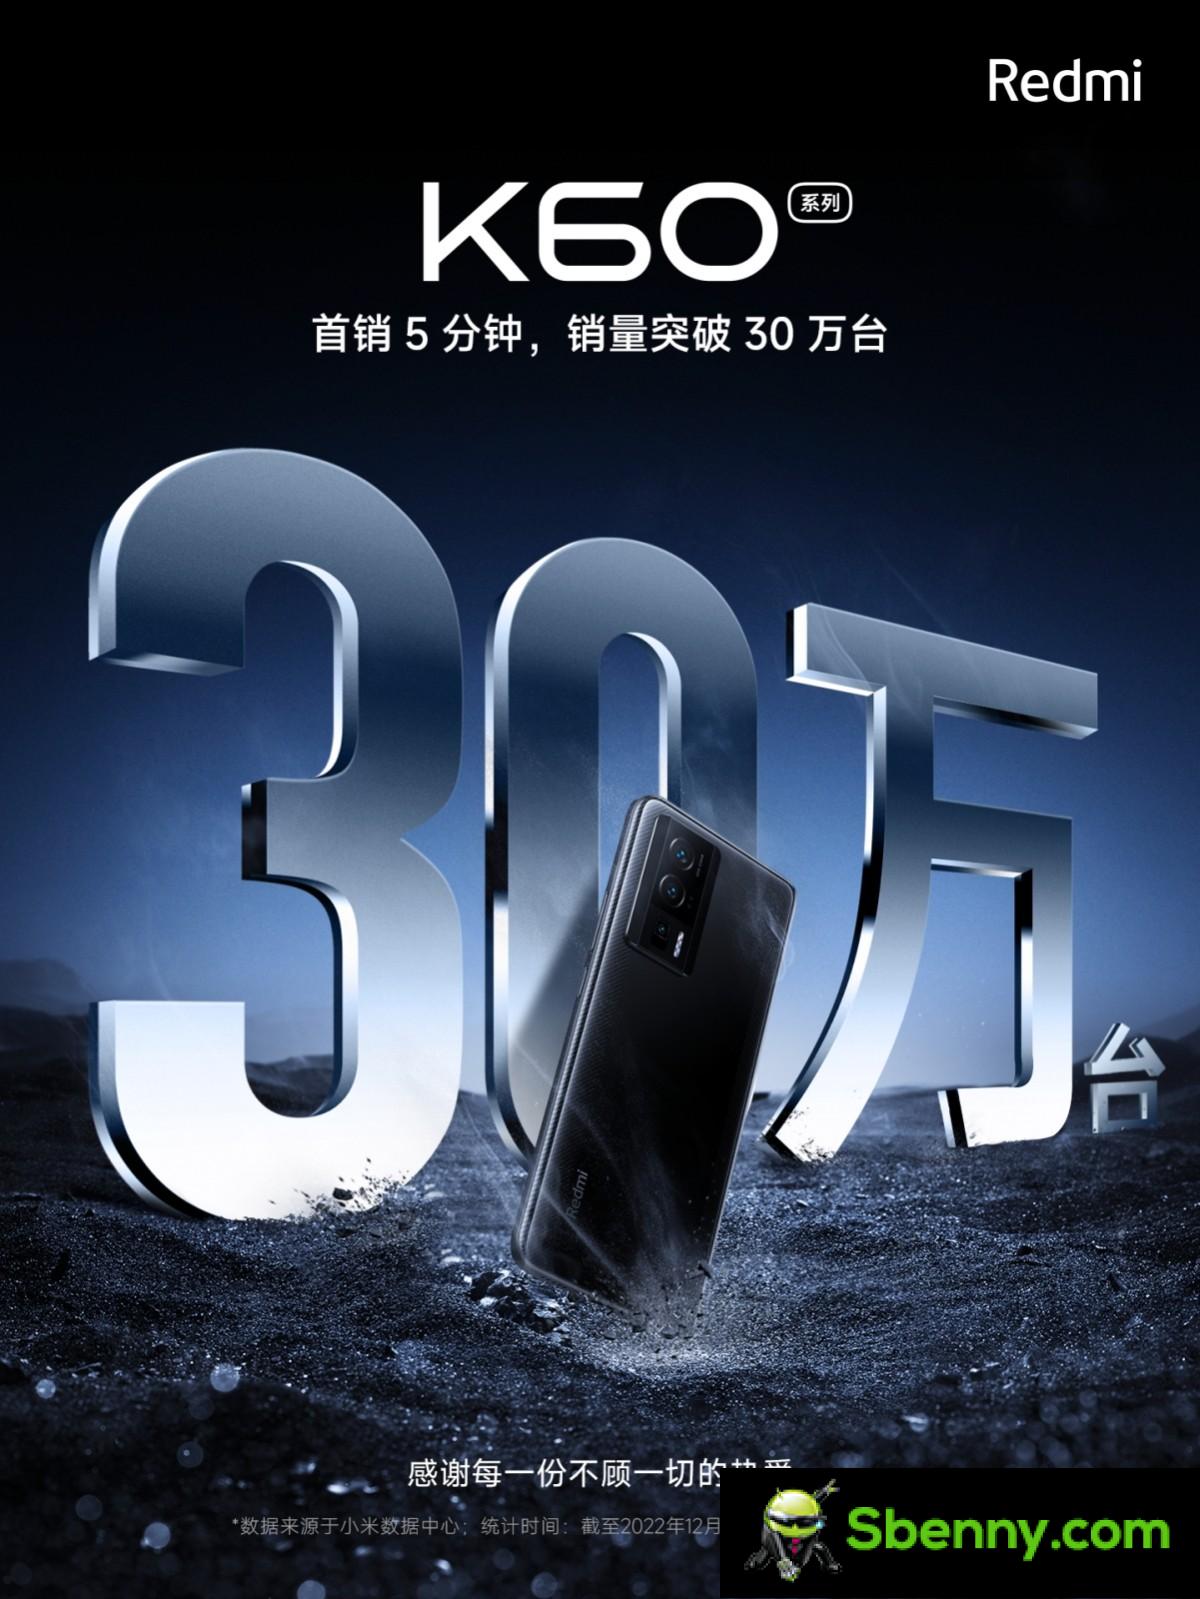 Xiaomi pusht 300,000 Redmi K60-Telefone in 5 Minuten